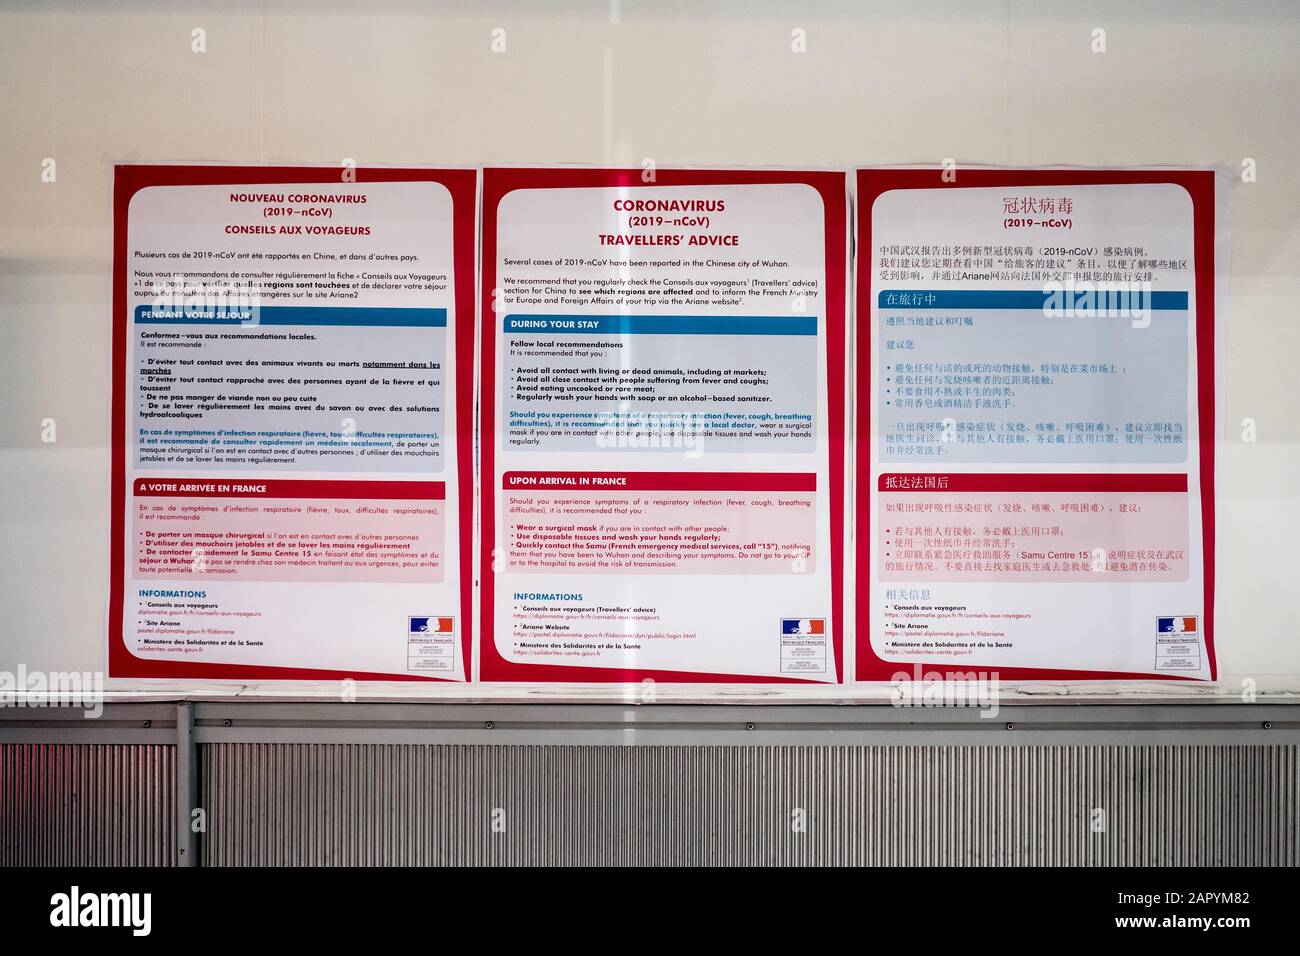 25-1-2020, Flughafen Charles de Gaulle, Roissy. 3 öffentliche Ratschläge zum Infektionsrisiko des Coronavirus, Französisch, englisch und chinesisch. Stockfoto